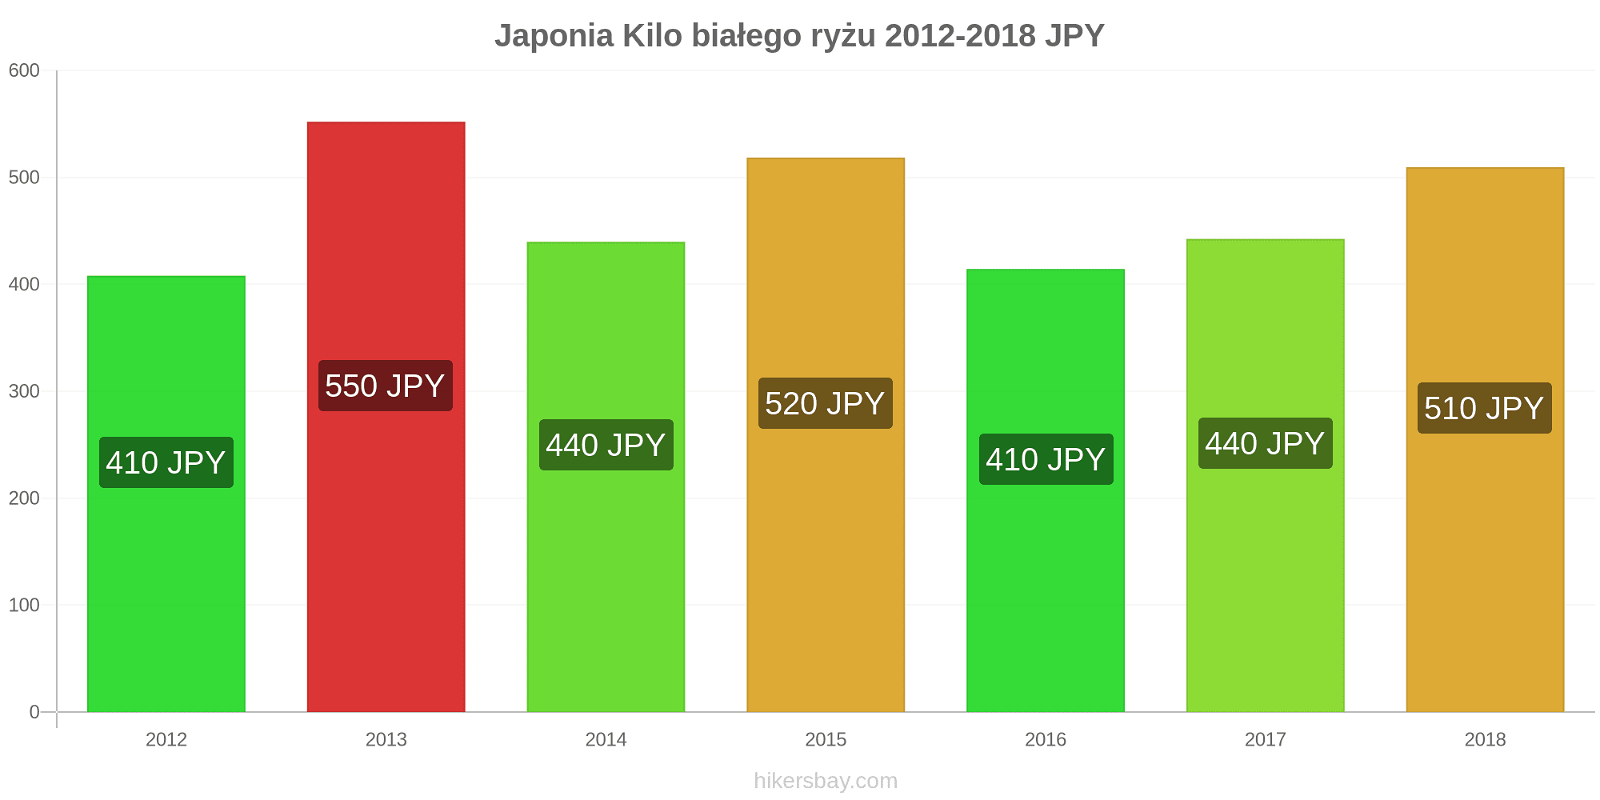 Japonia zmiany cen Kilo białego ryżu hikersbay.com